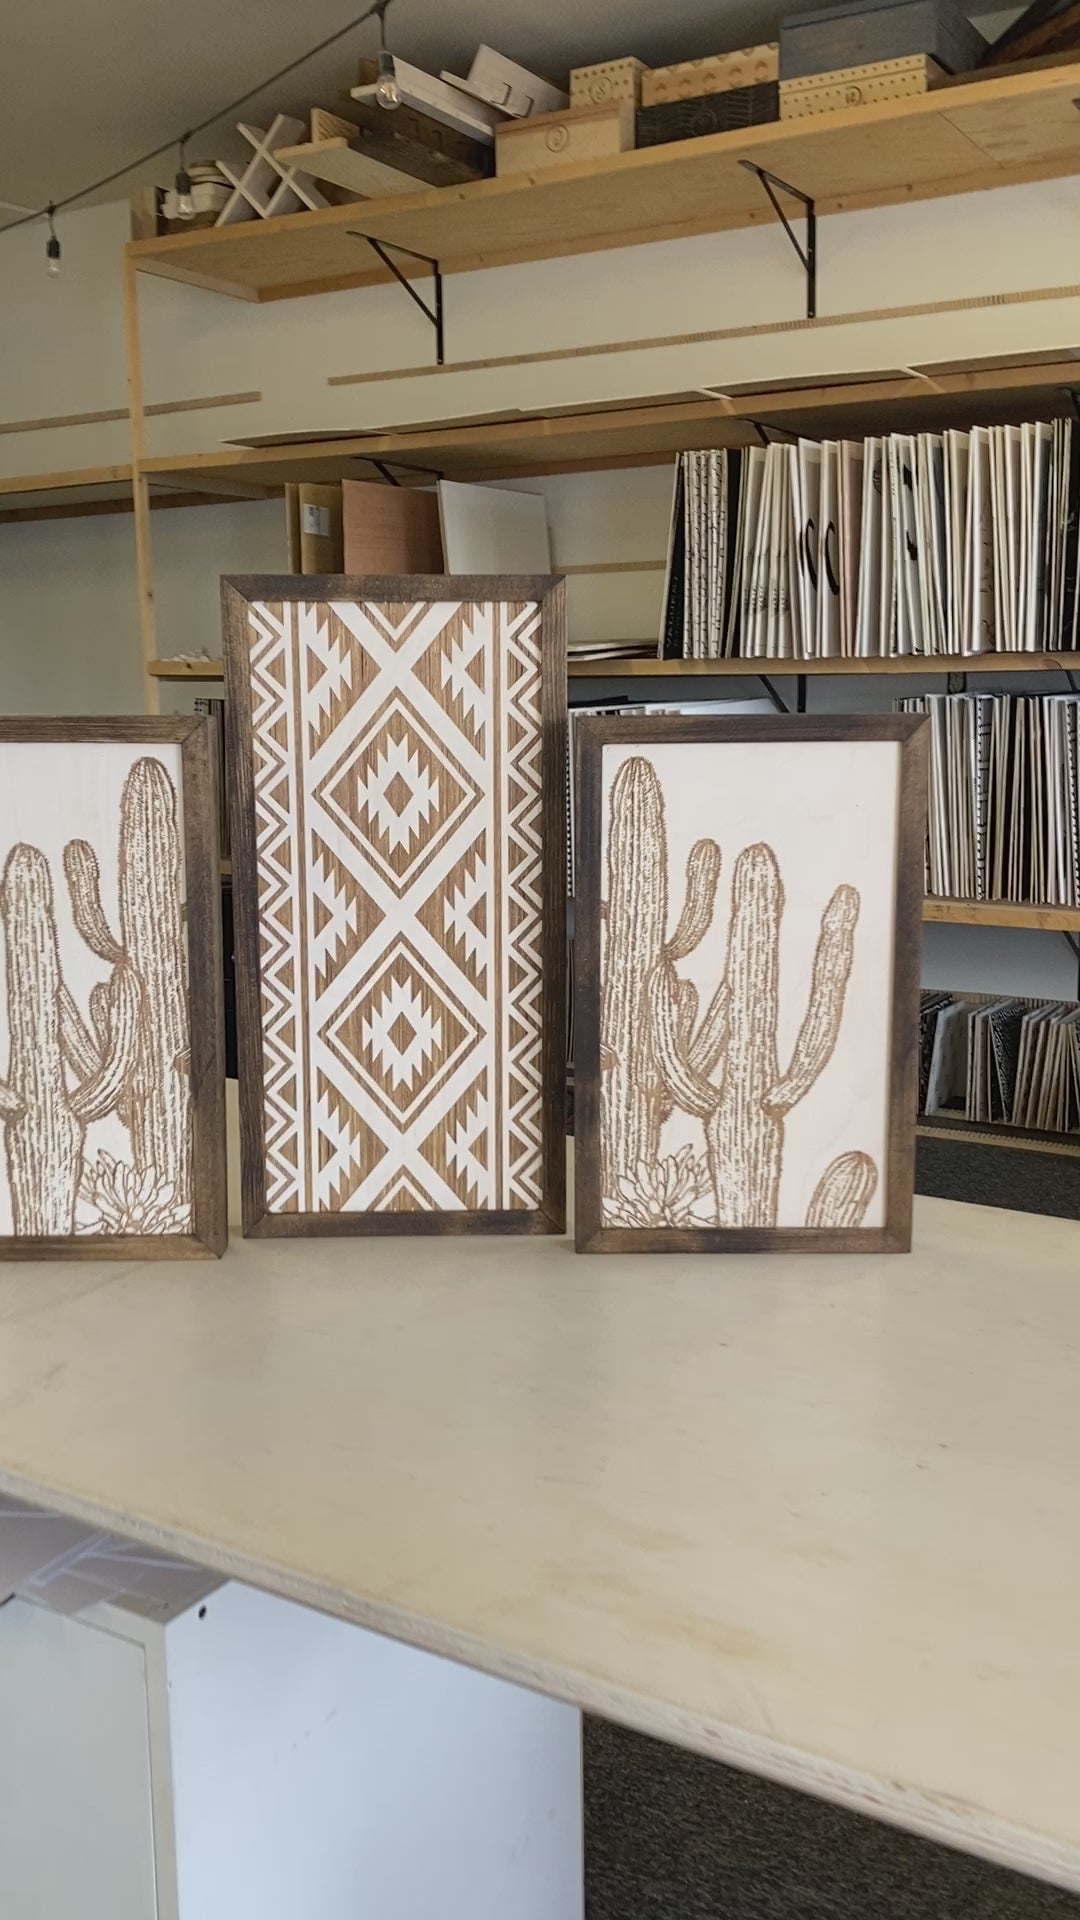 Three Piece Aztec & Cactus Artwork Set